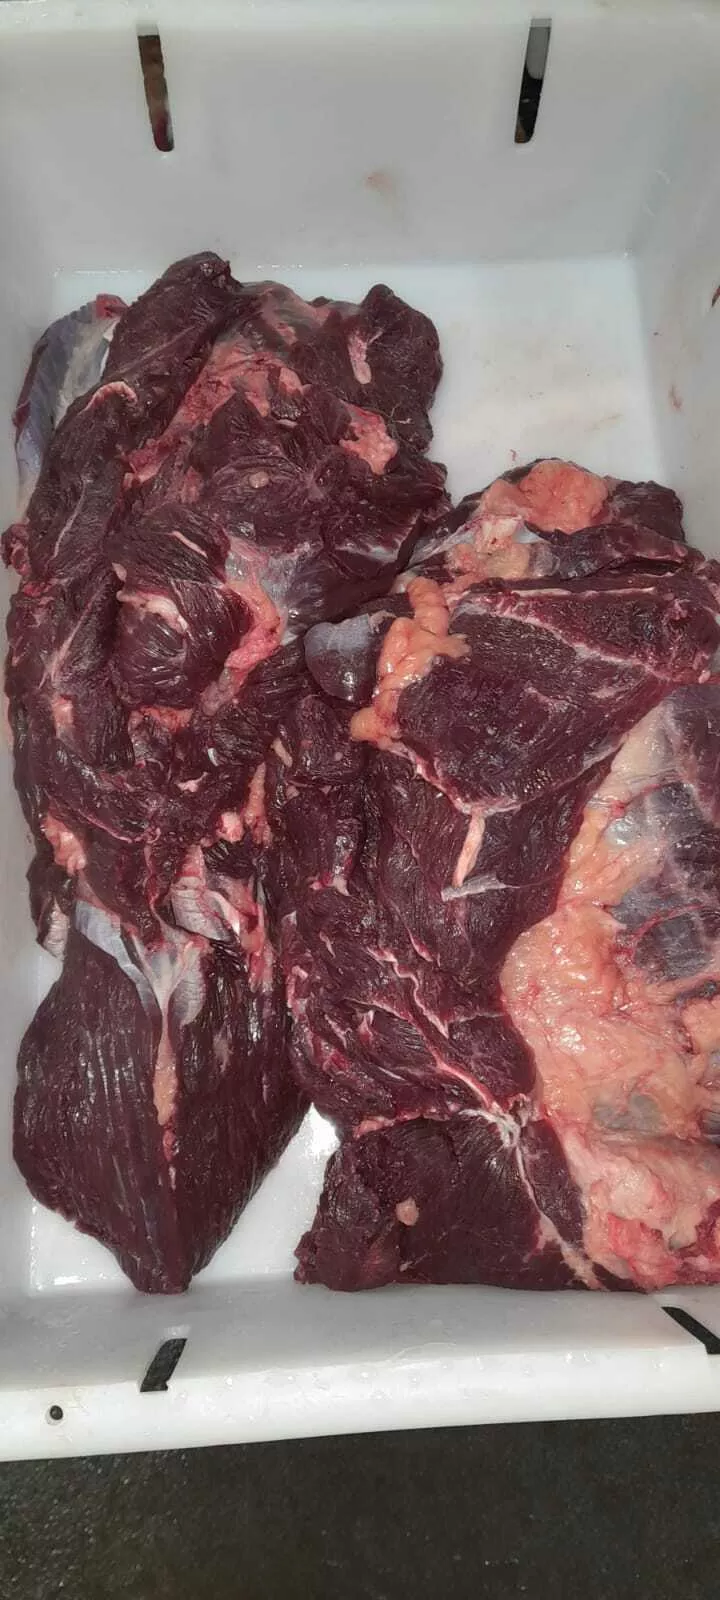 отруб из говядины шейный бескостный в Барнауле и Алтайском крае